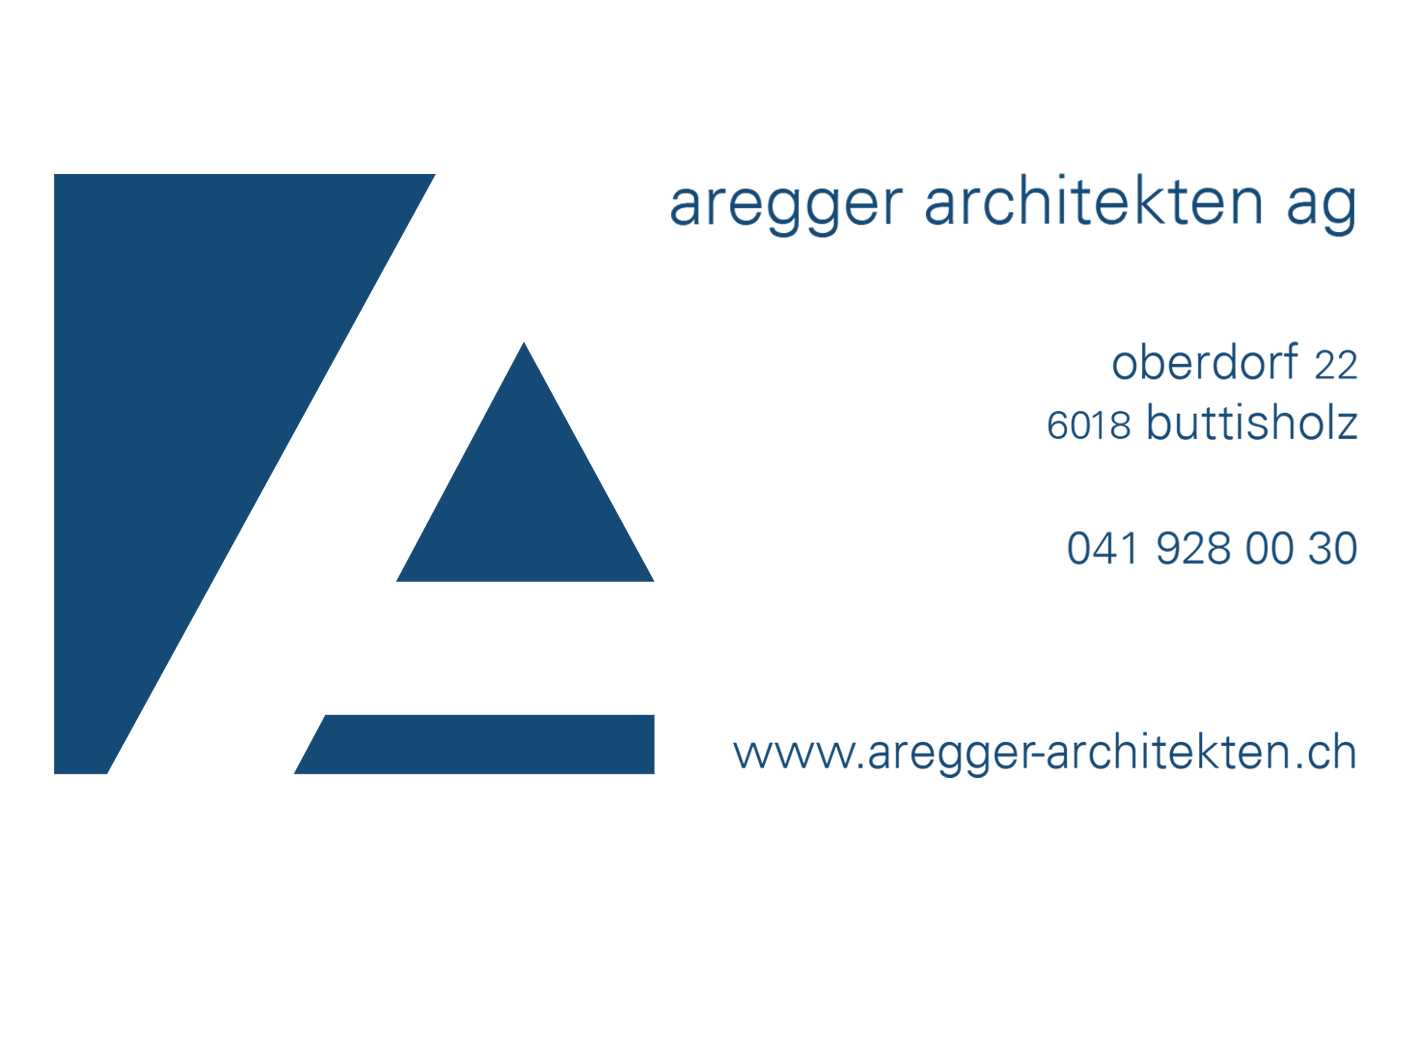 Aregger Architekten AG